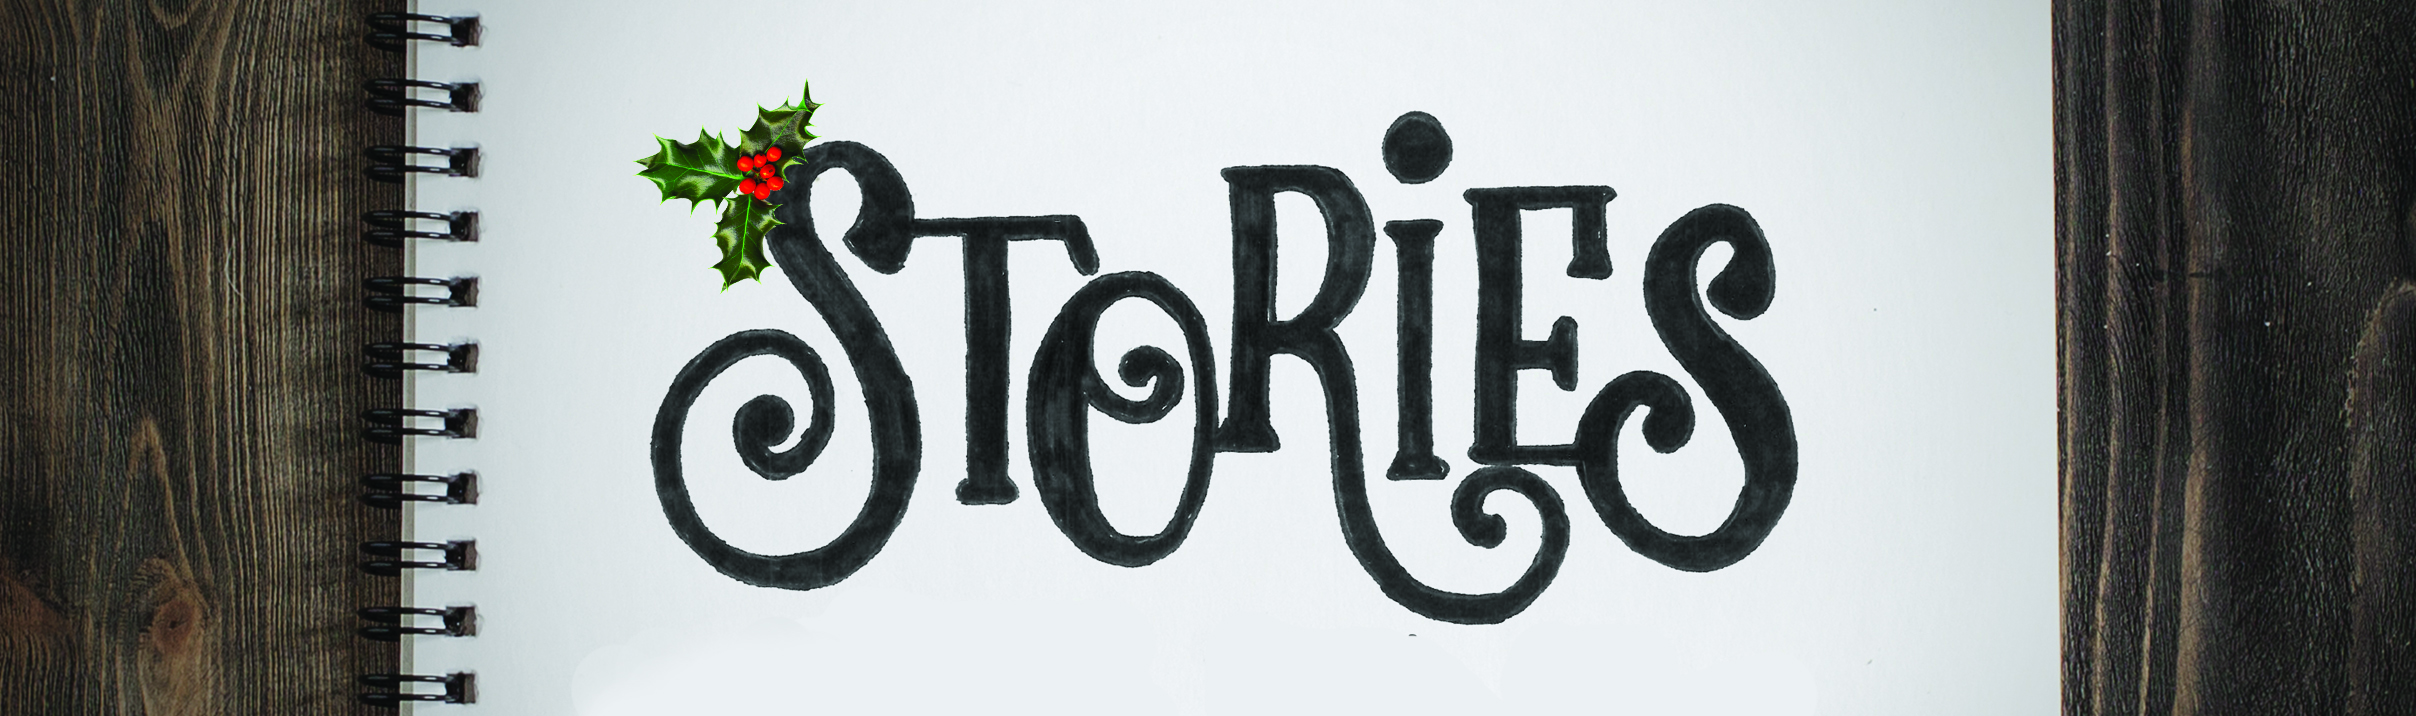 Stories: Week 3